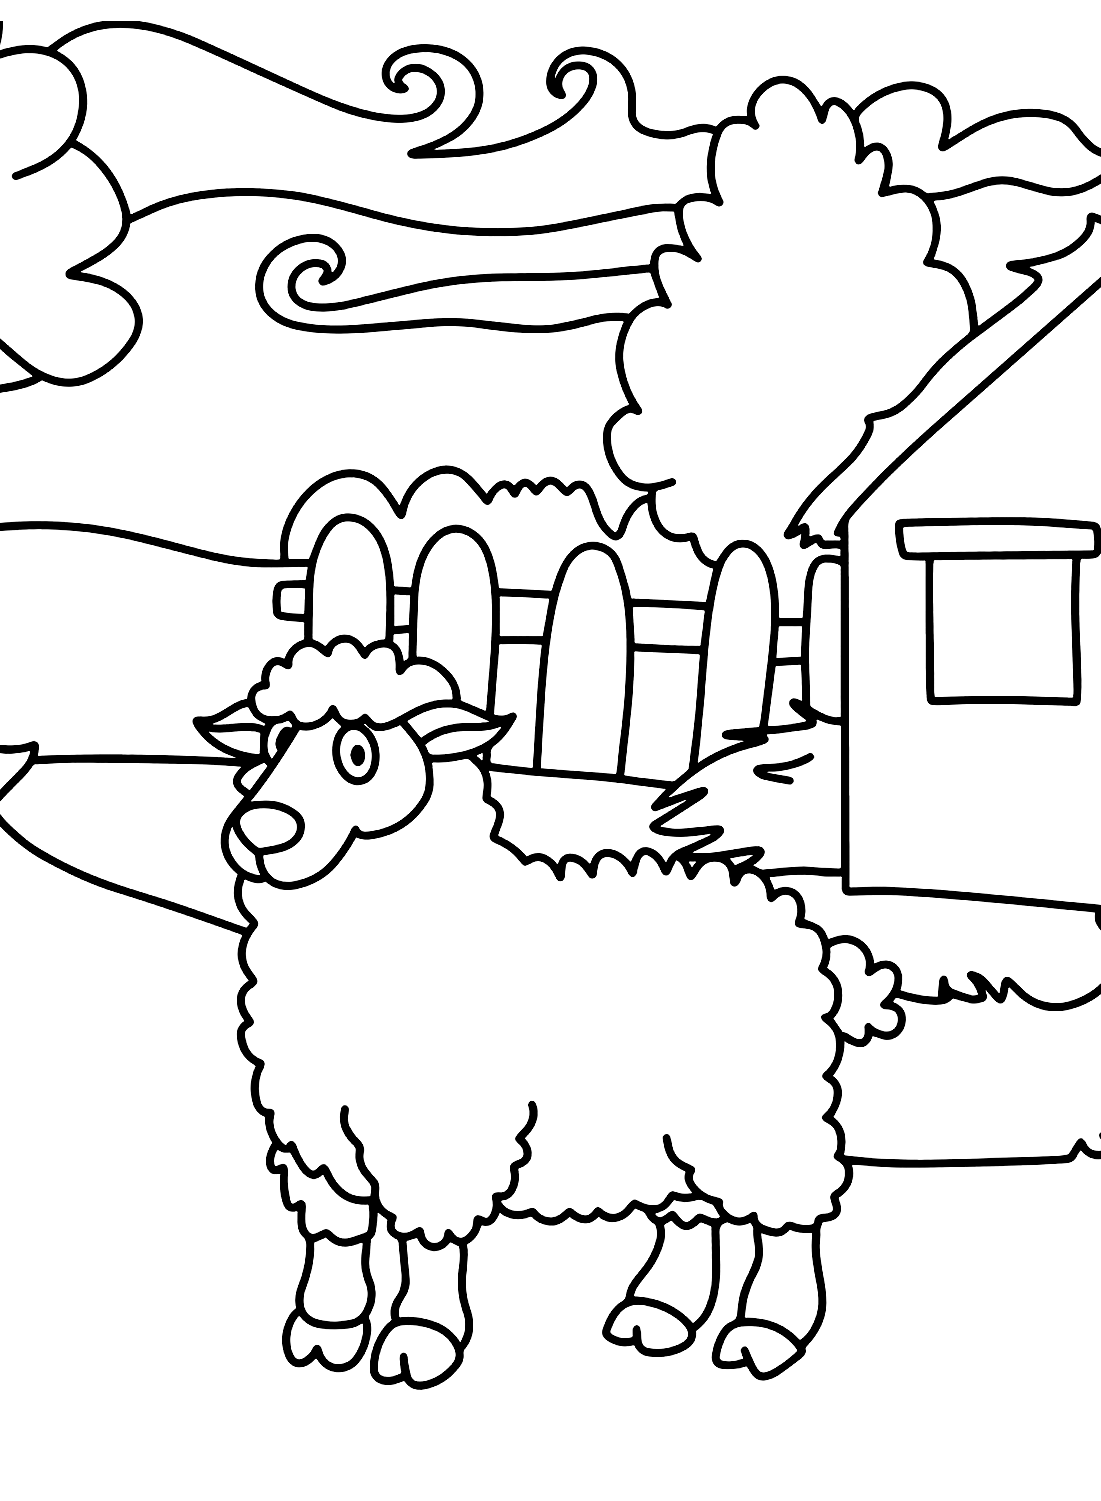 Stampa pecore fantastiche da colorare da pecore